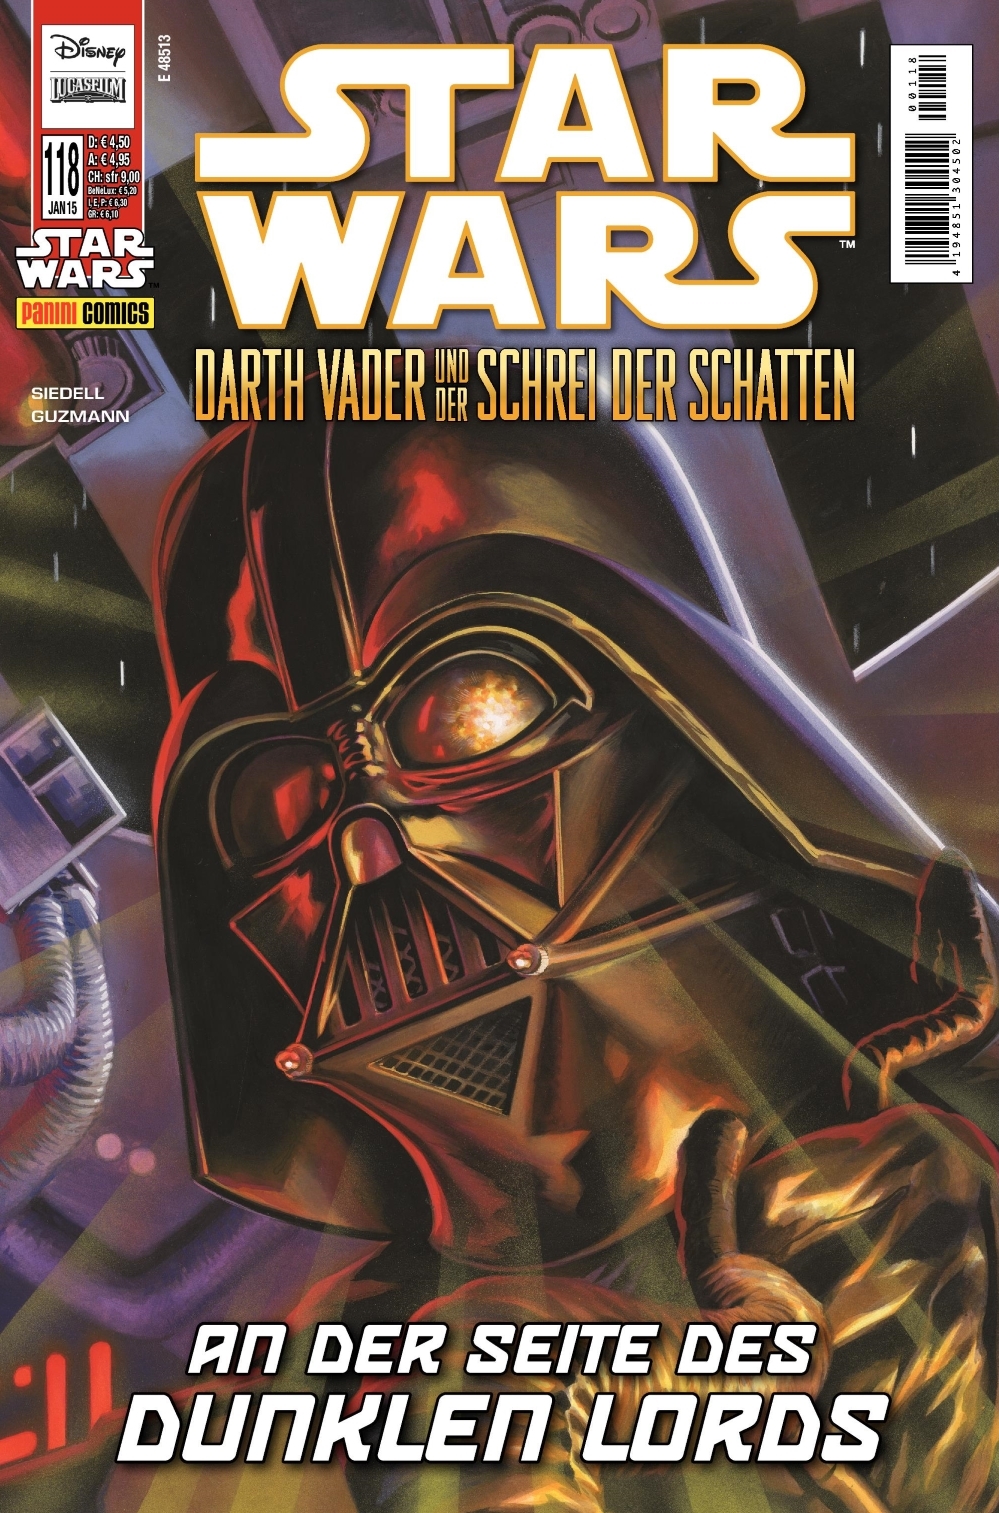 Star Wars #118: Darth Vader und der Schrei der Schatten (2)